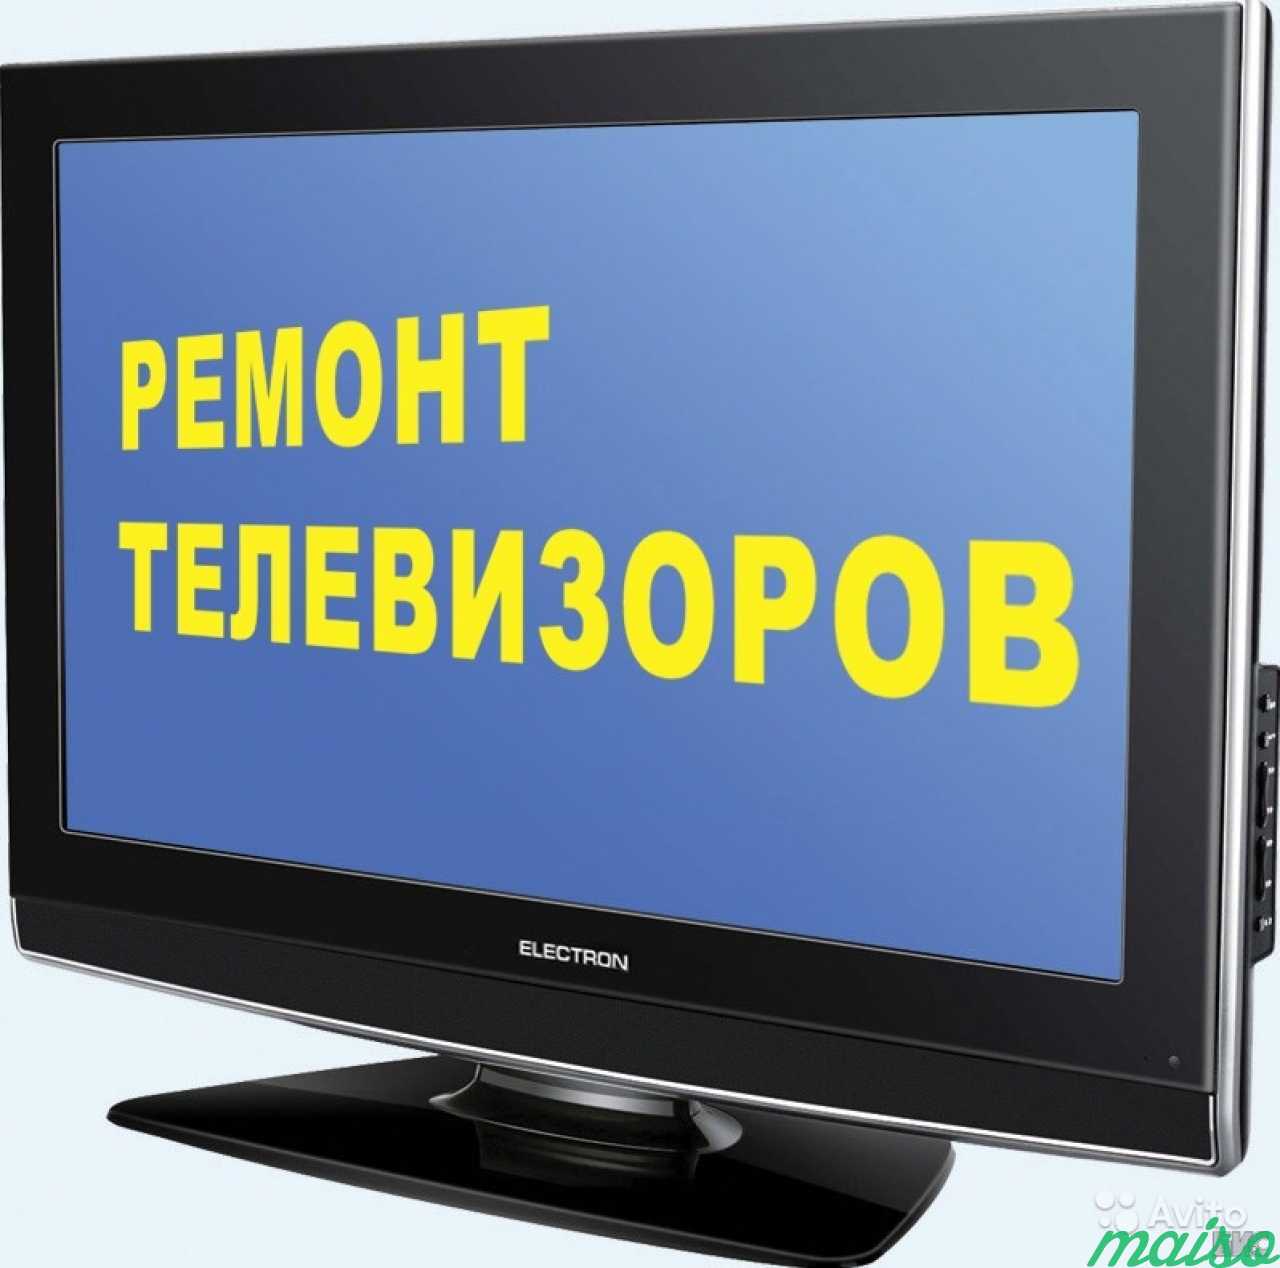 Ремонт телевизоров в москве цена